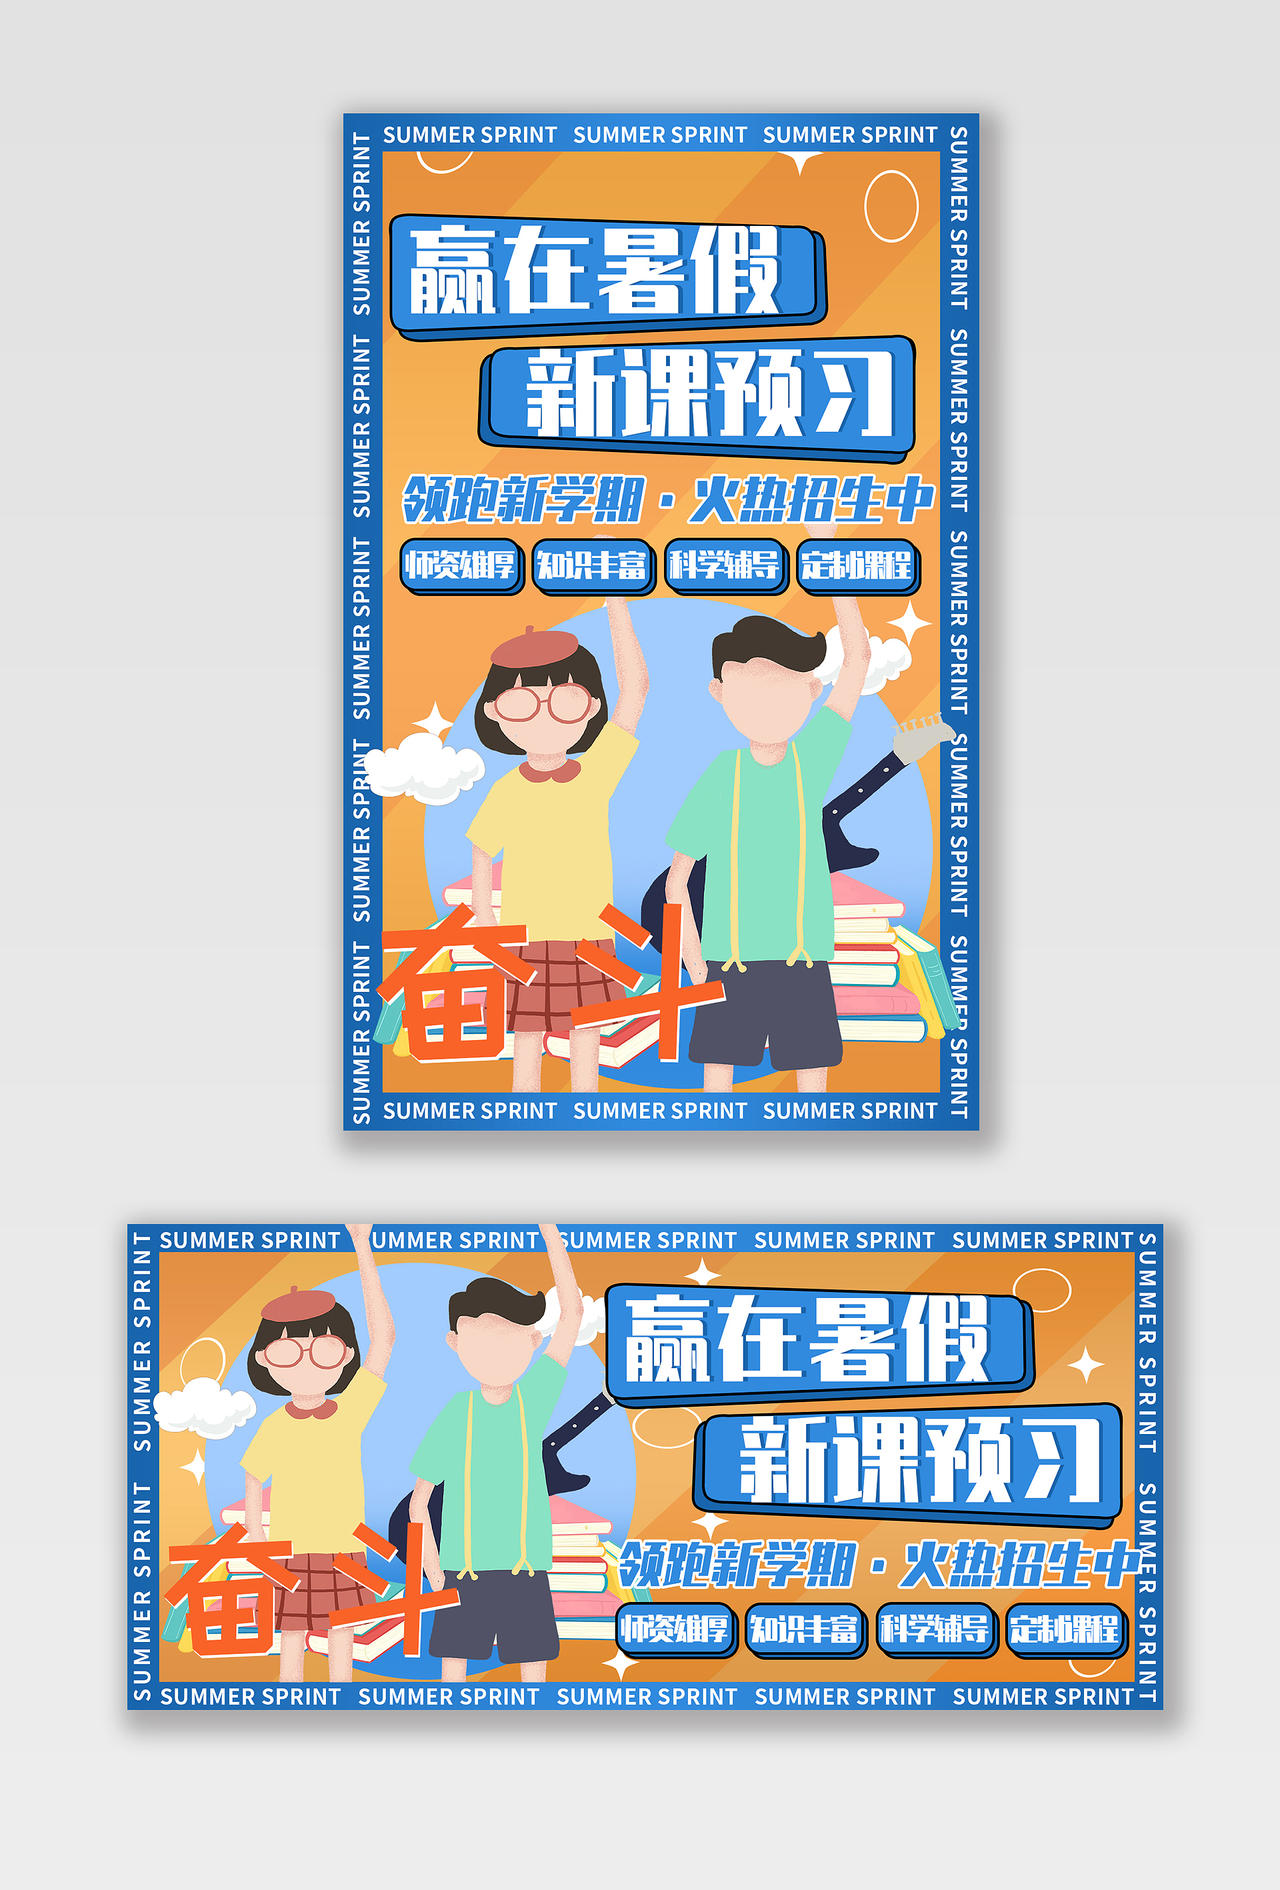 蓝黄色平面手绘风格赢在暑假活动优惠暑假班教育培训海报banner